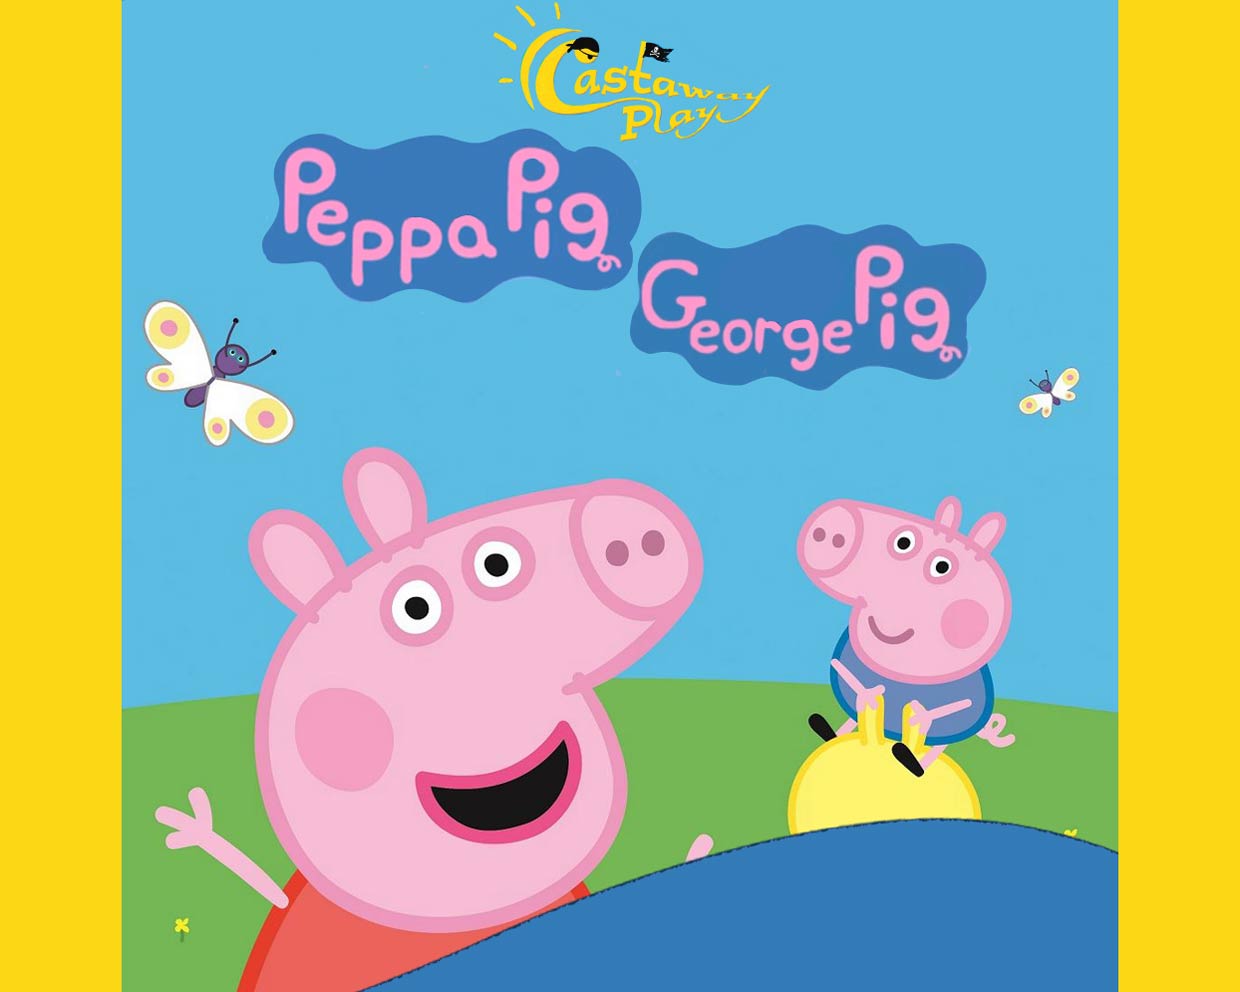 Peppa & George Pig